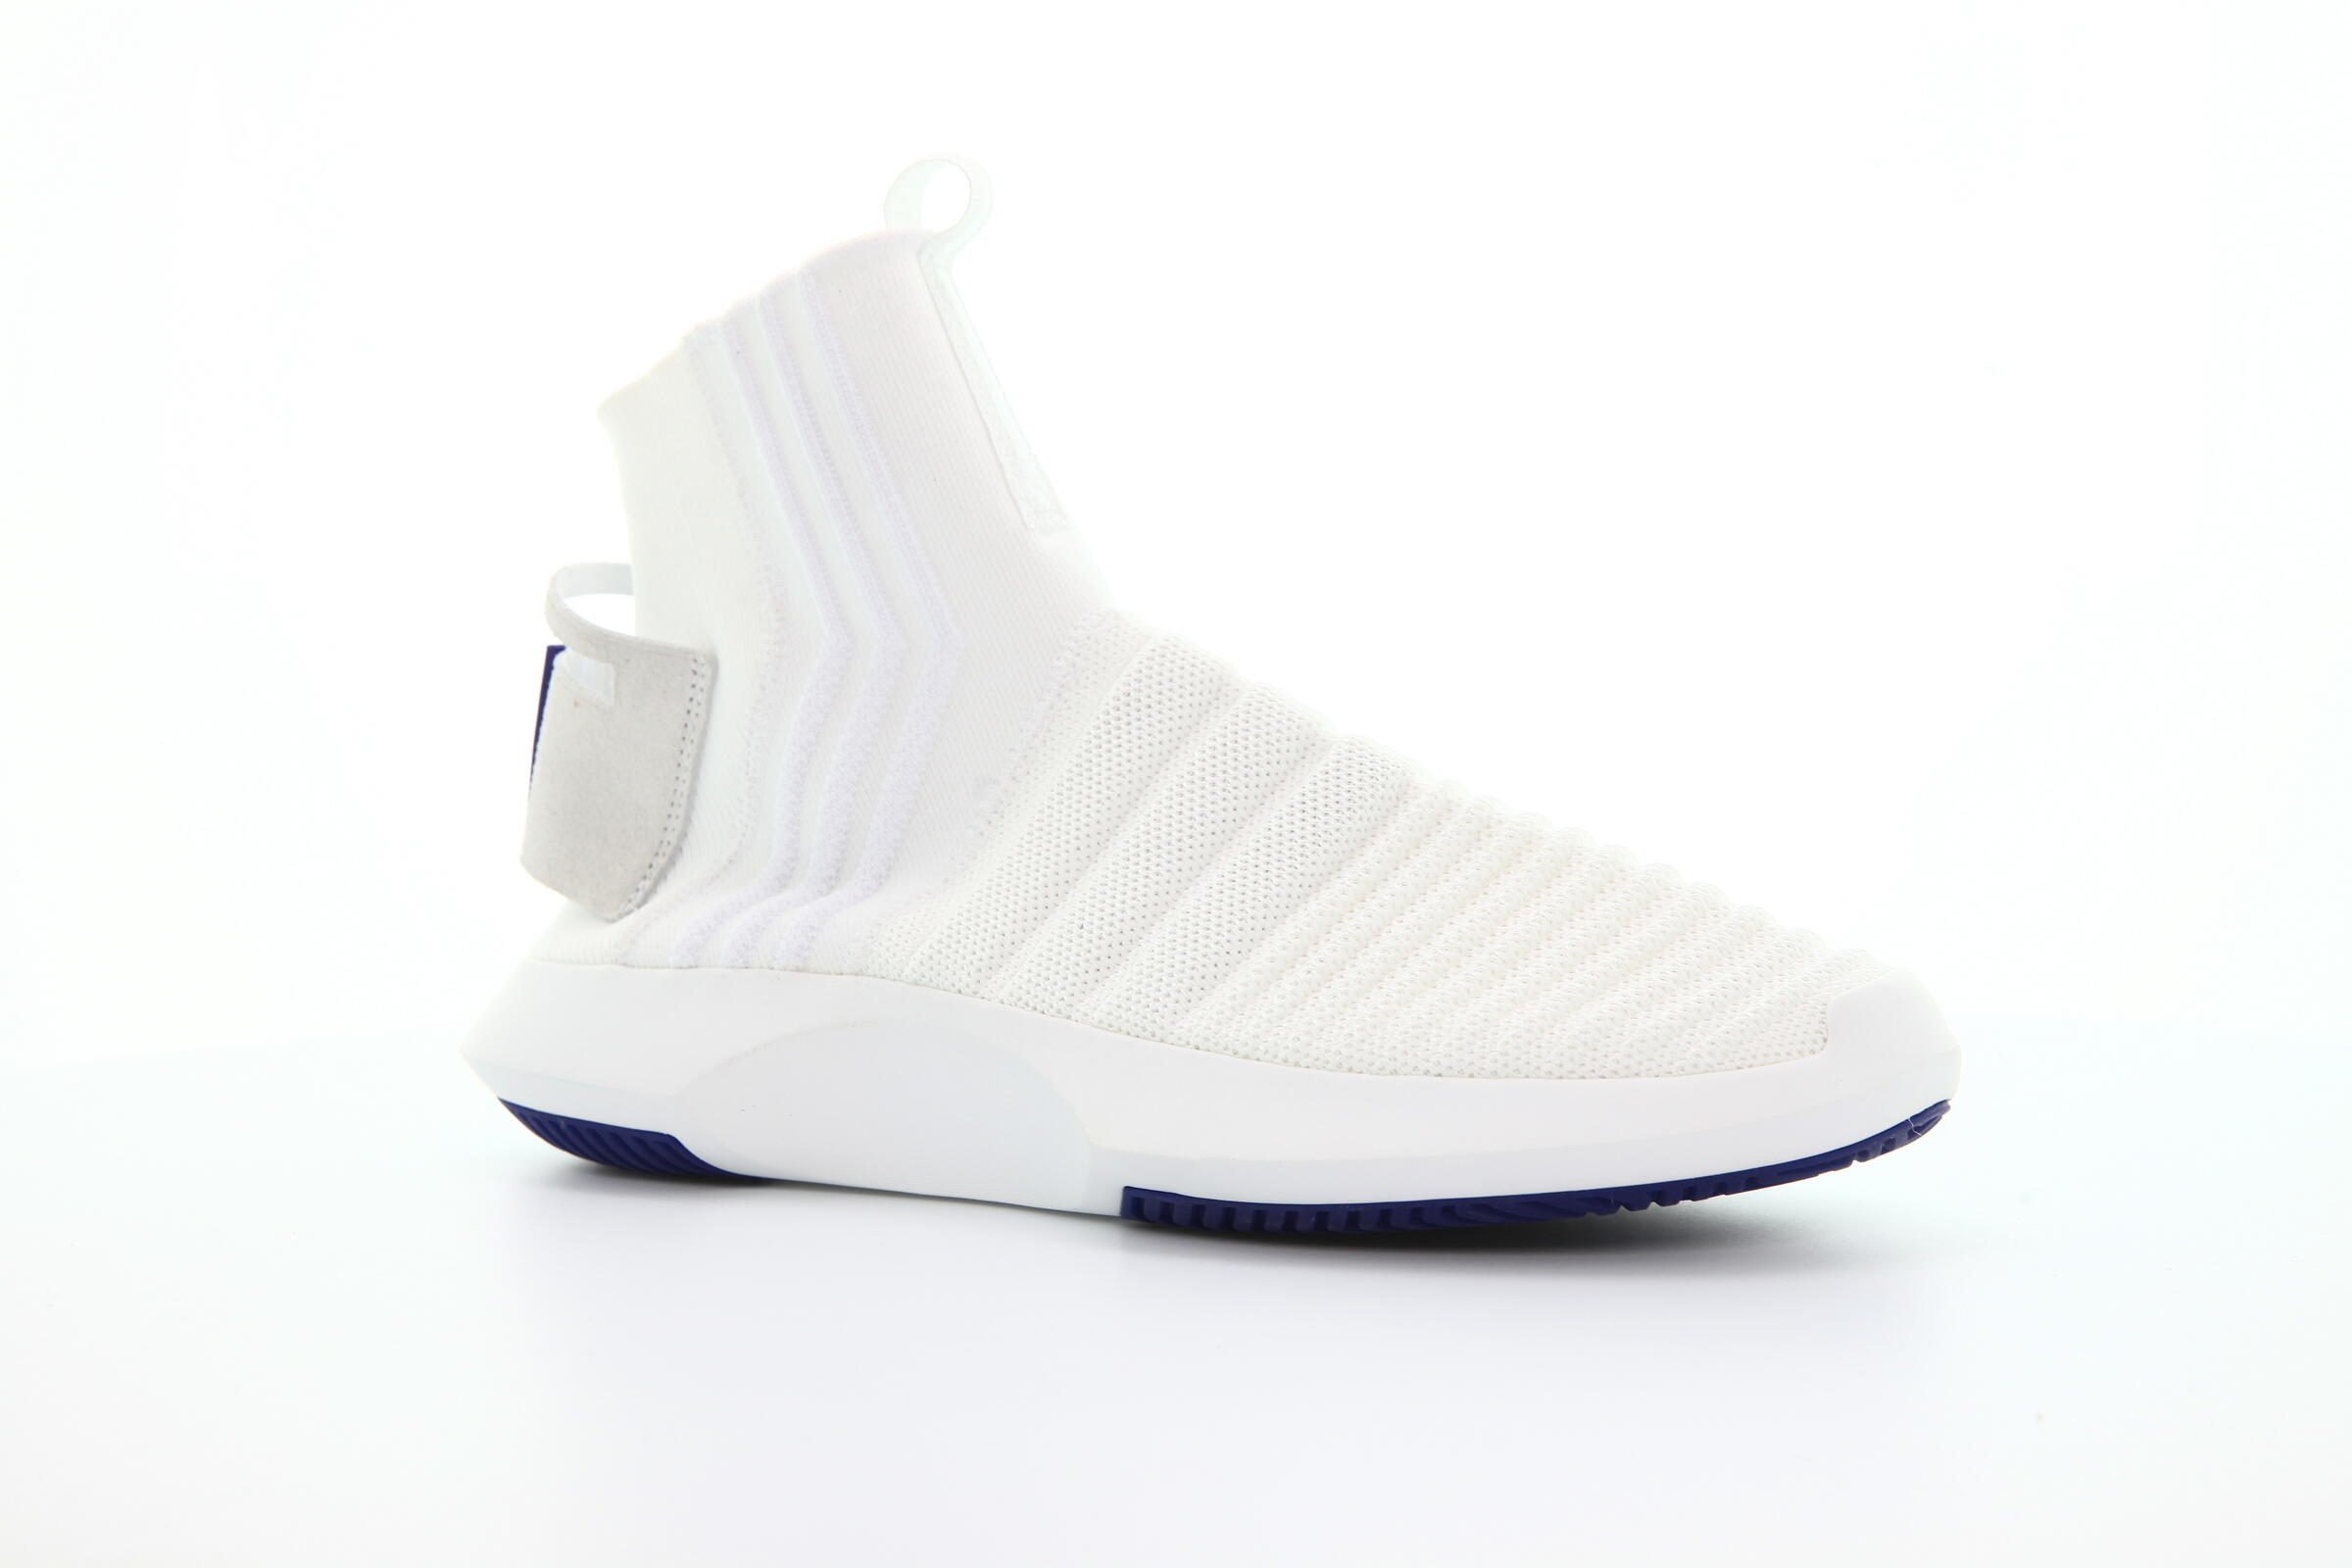 adidas Originals Crazy 1 Adv Sock Primeknit "White"